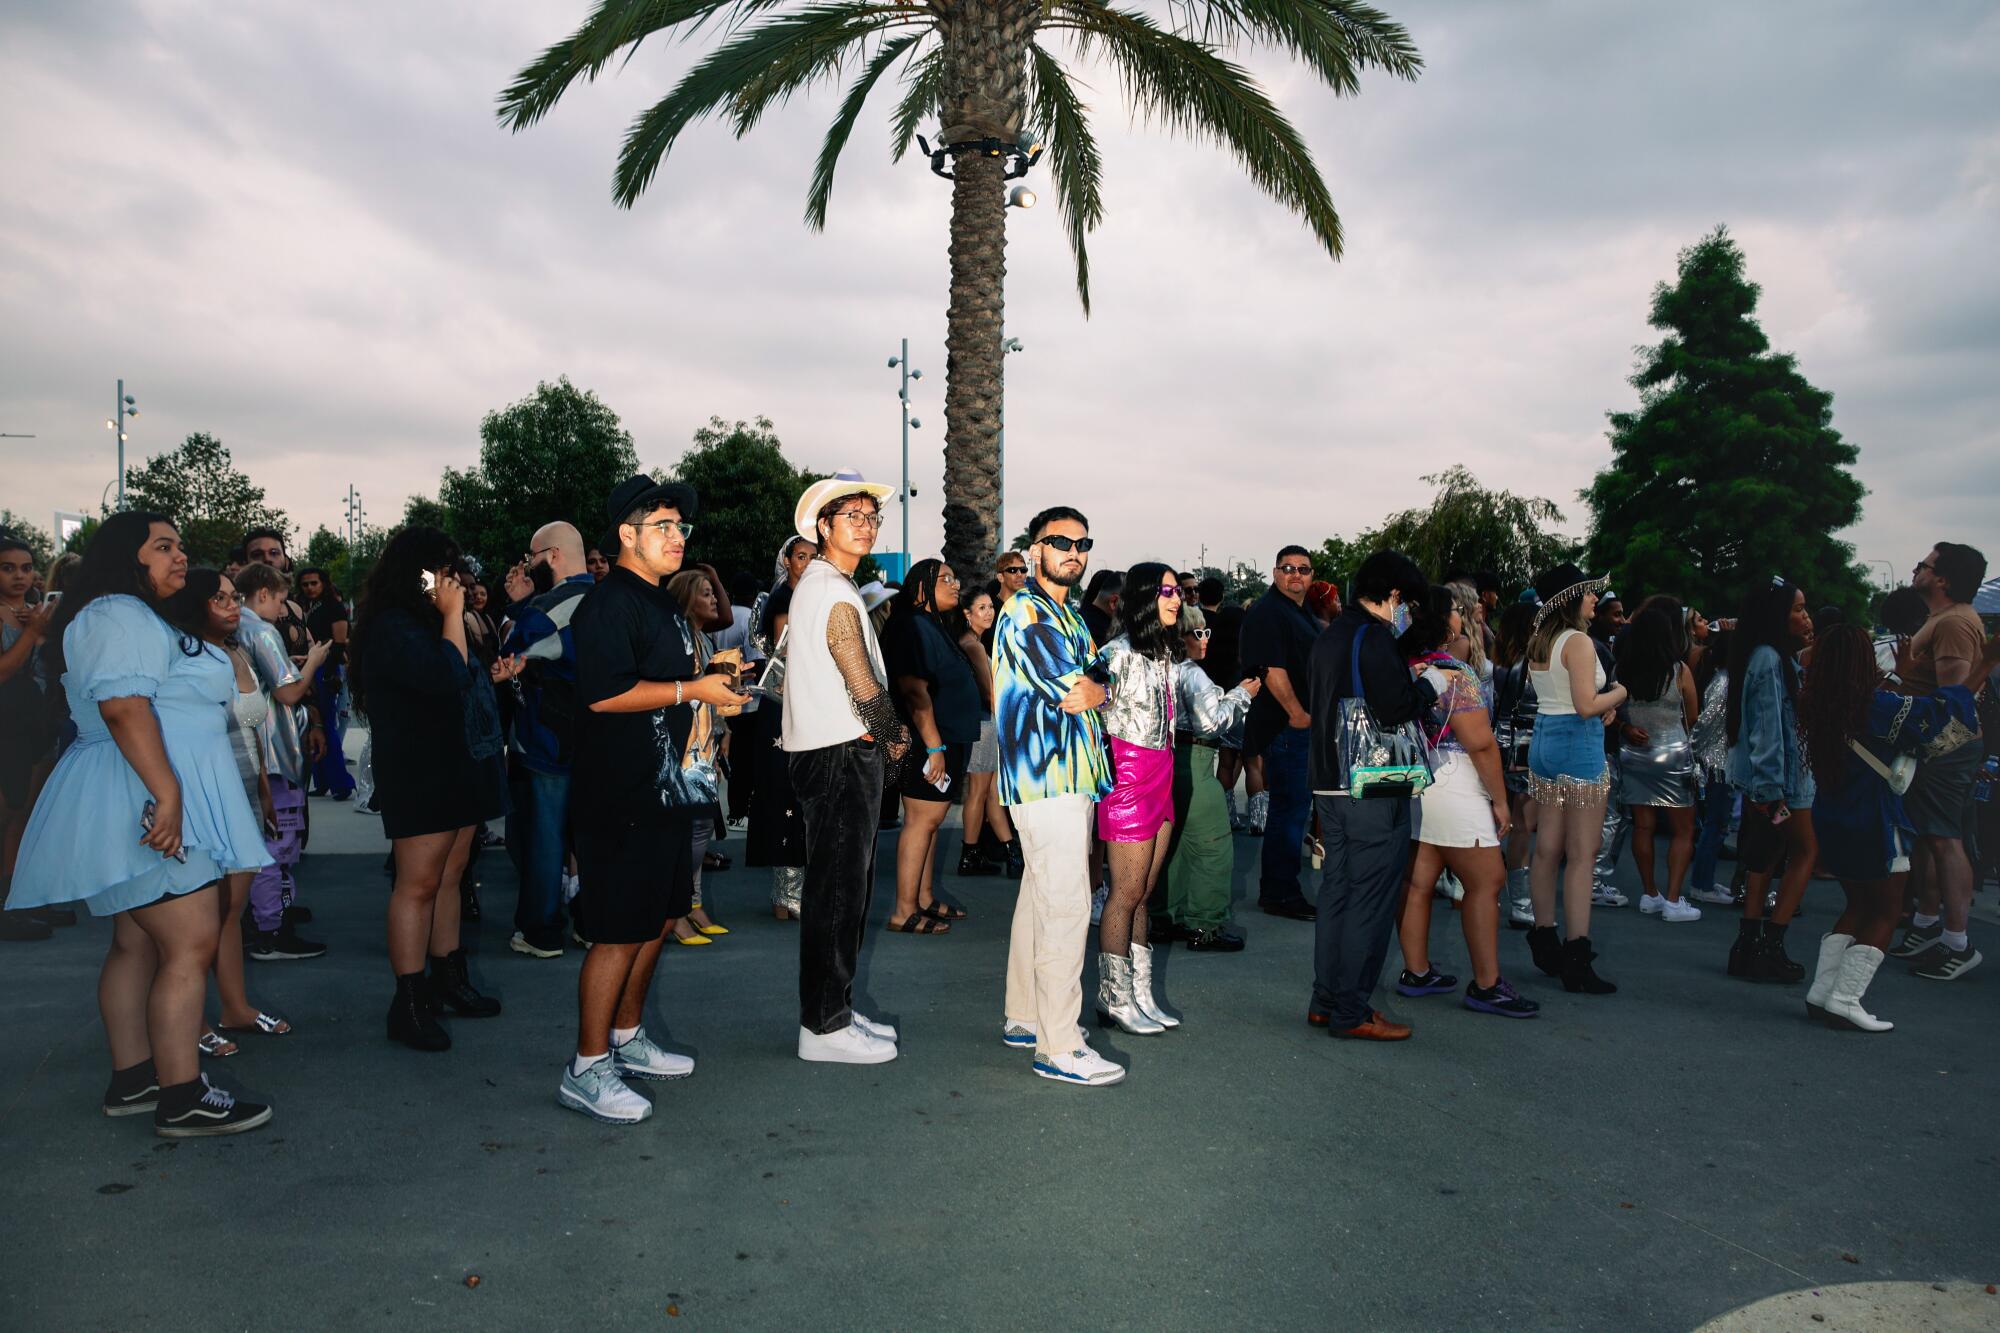 People line up near a palm tree.